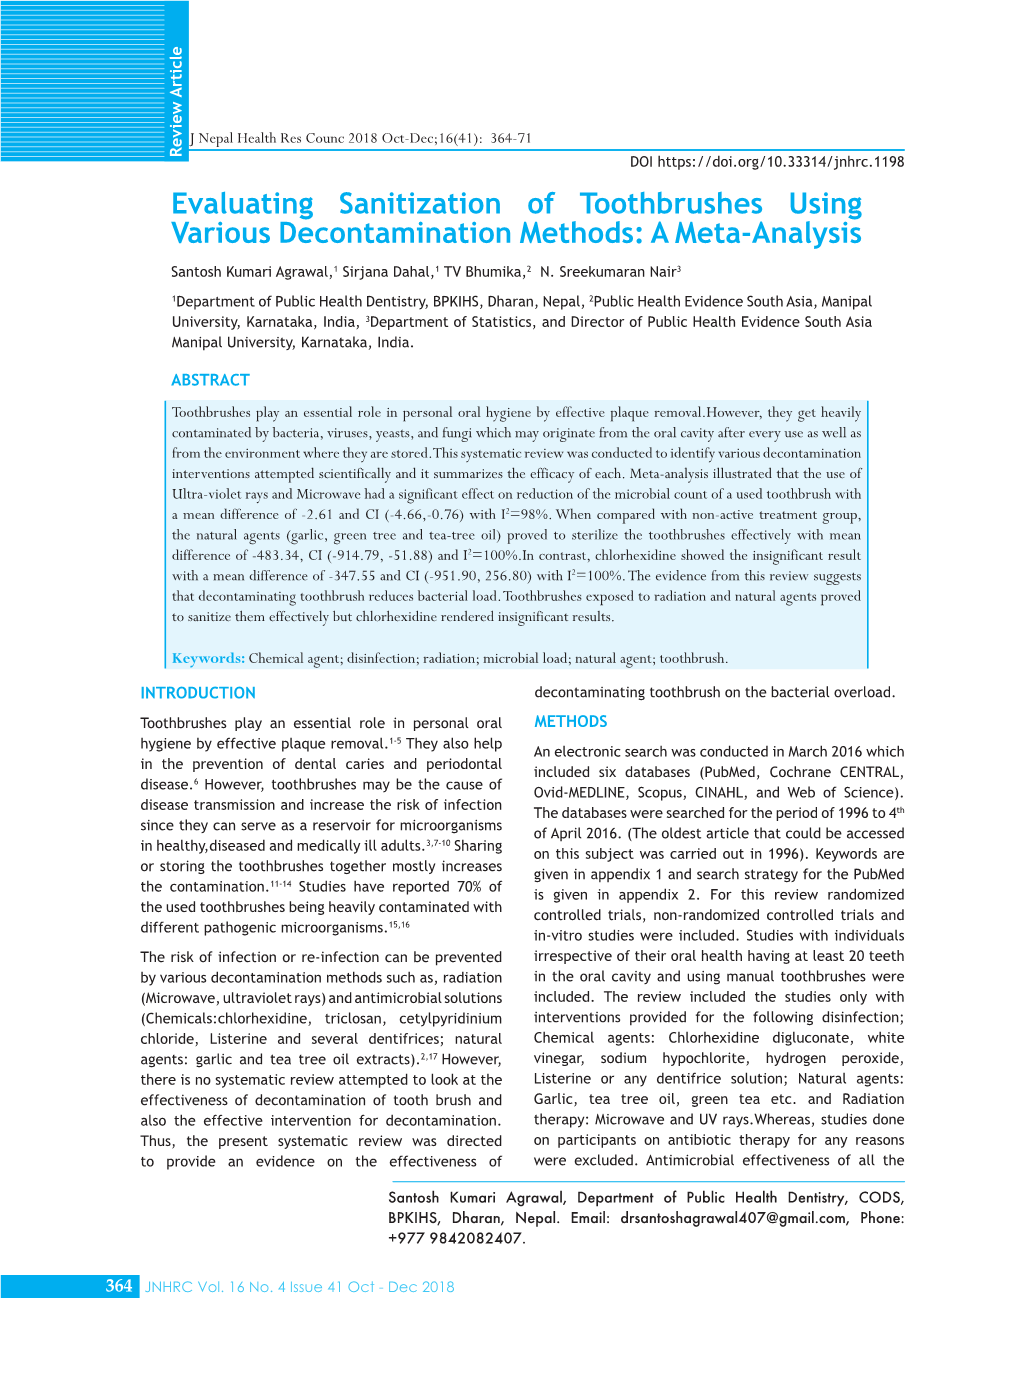 Evaluating Sanitization of Toothbrushes Using Various Decontamination Methods: a Meta-Analysis